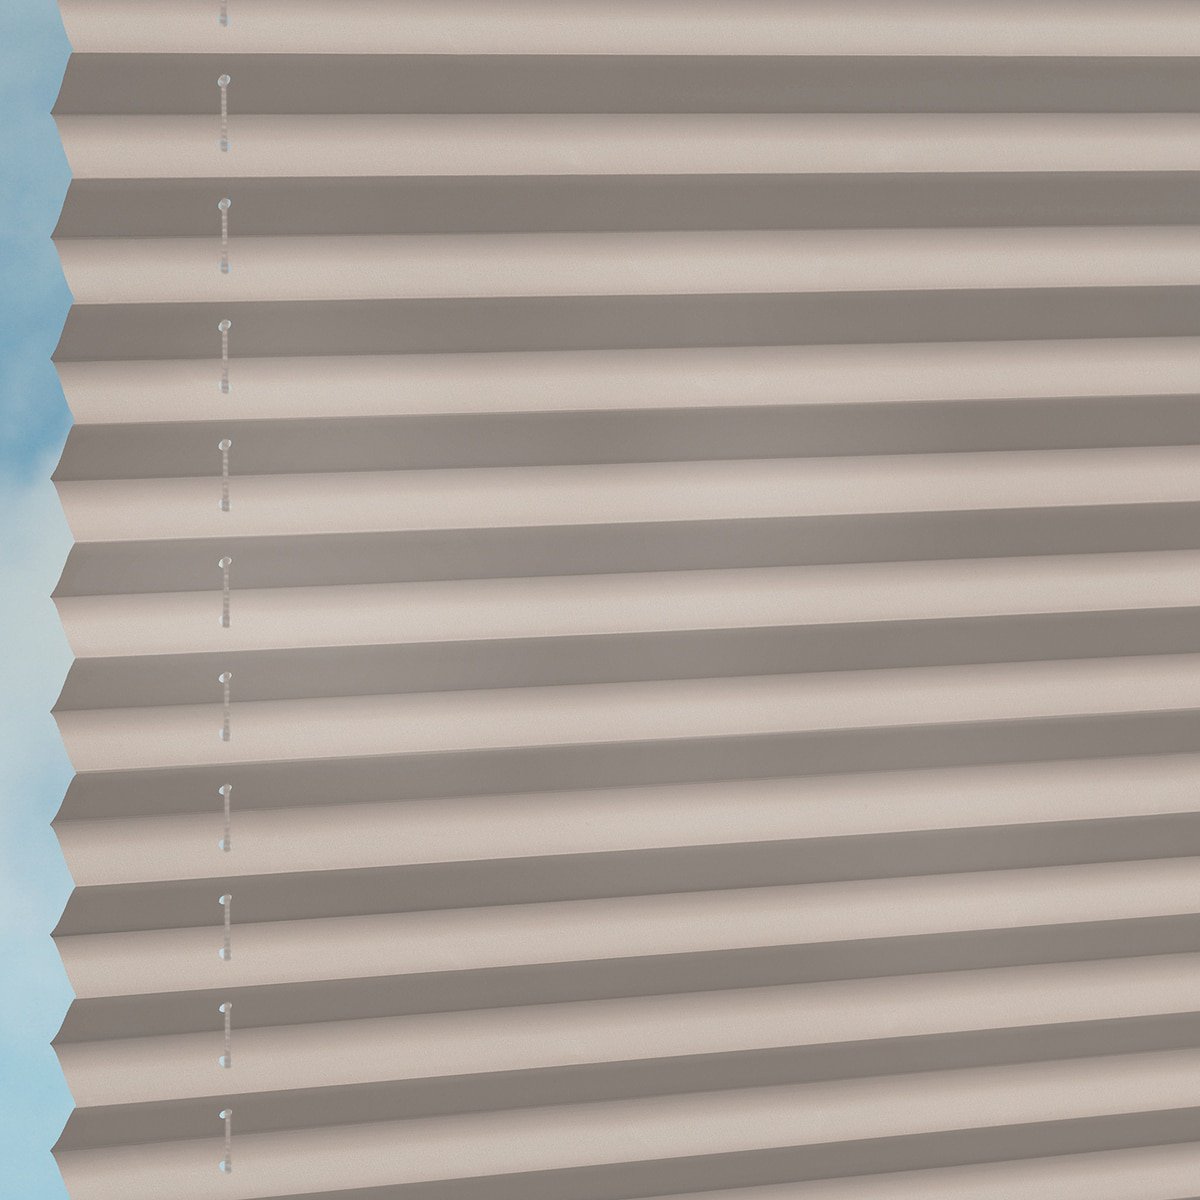 Halbtransparentes Plissee auf Maß in matter, feiner Baumwoll-Optik - Greige  | Sonnenschutz für Fenster nach Maß - Online-Shop